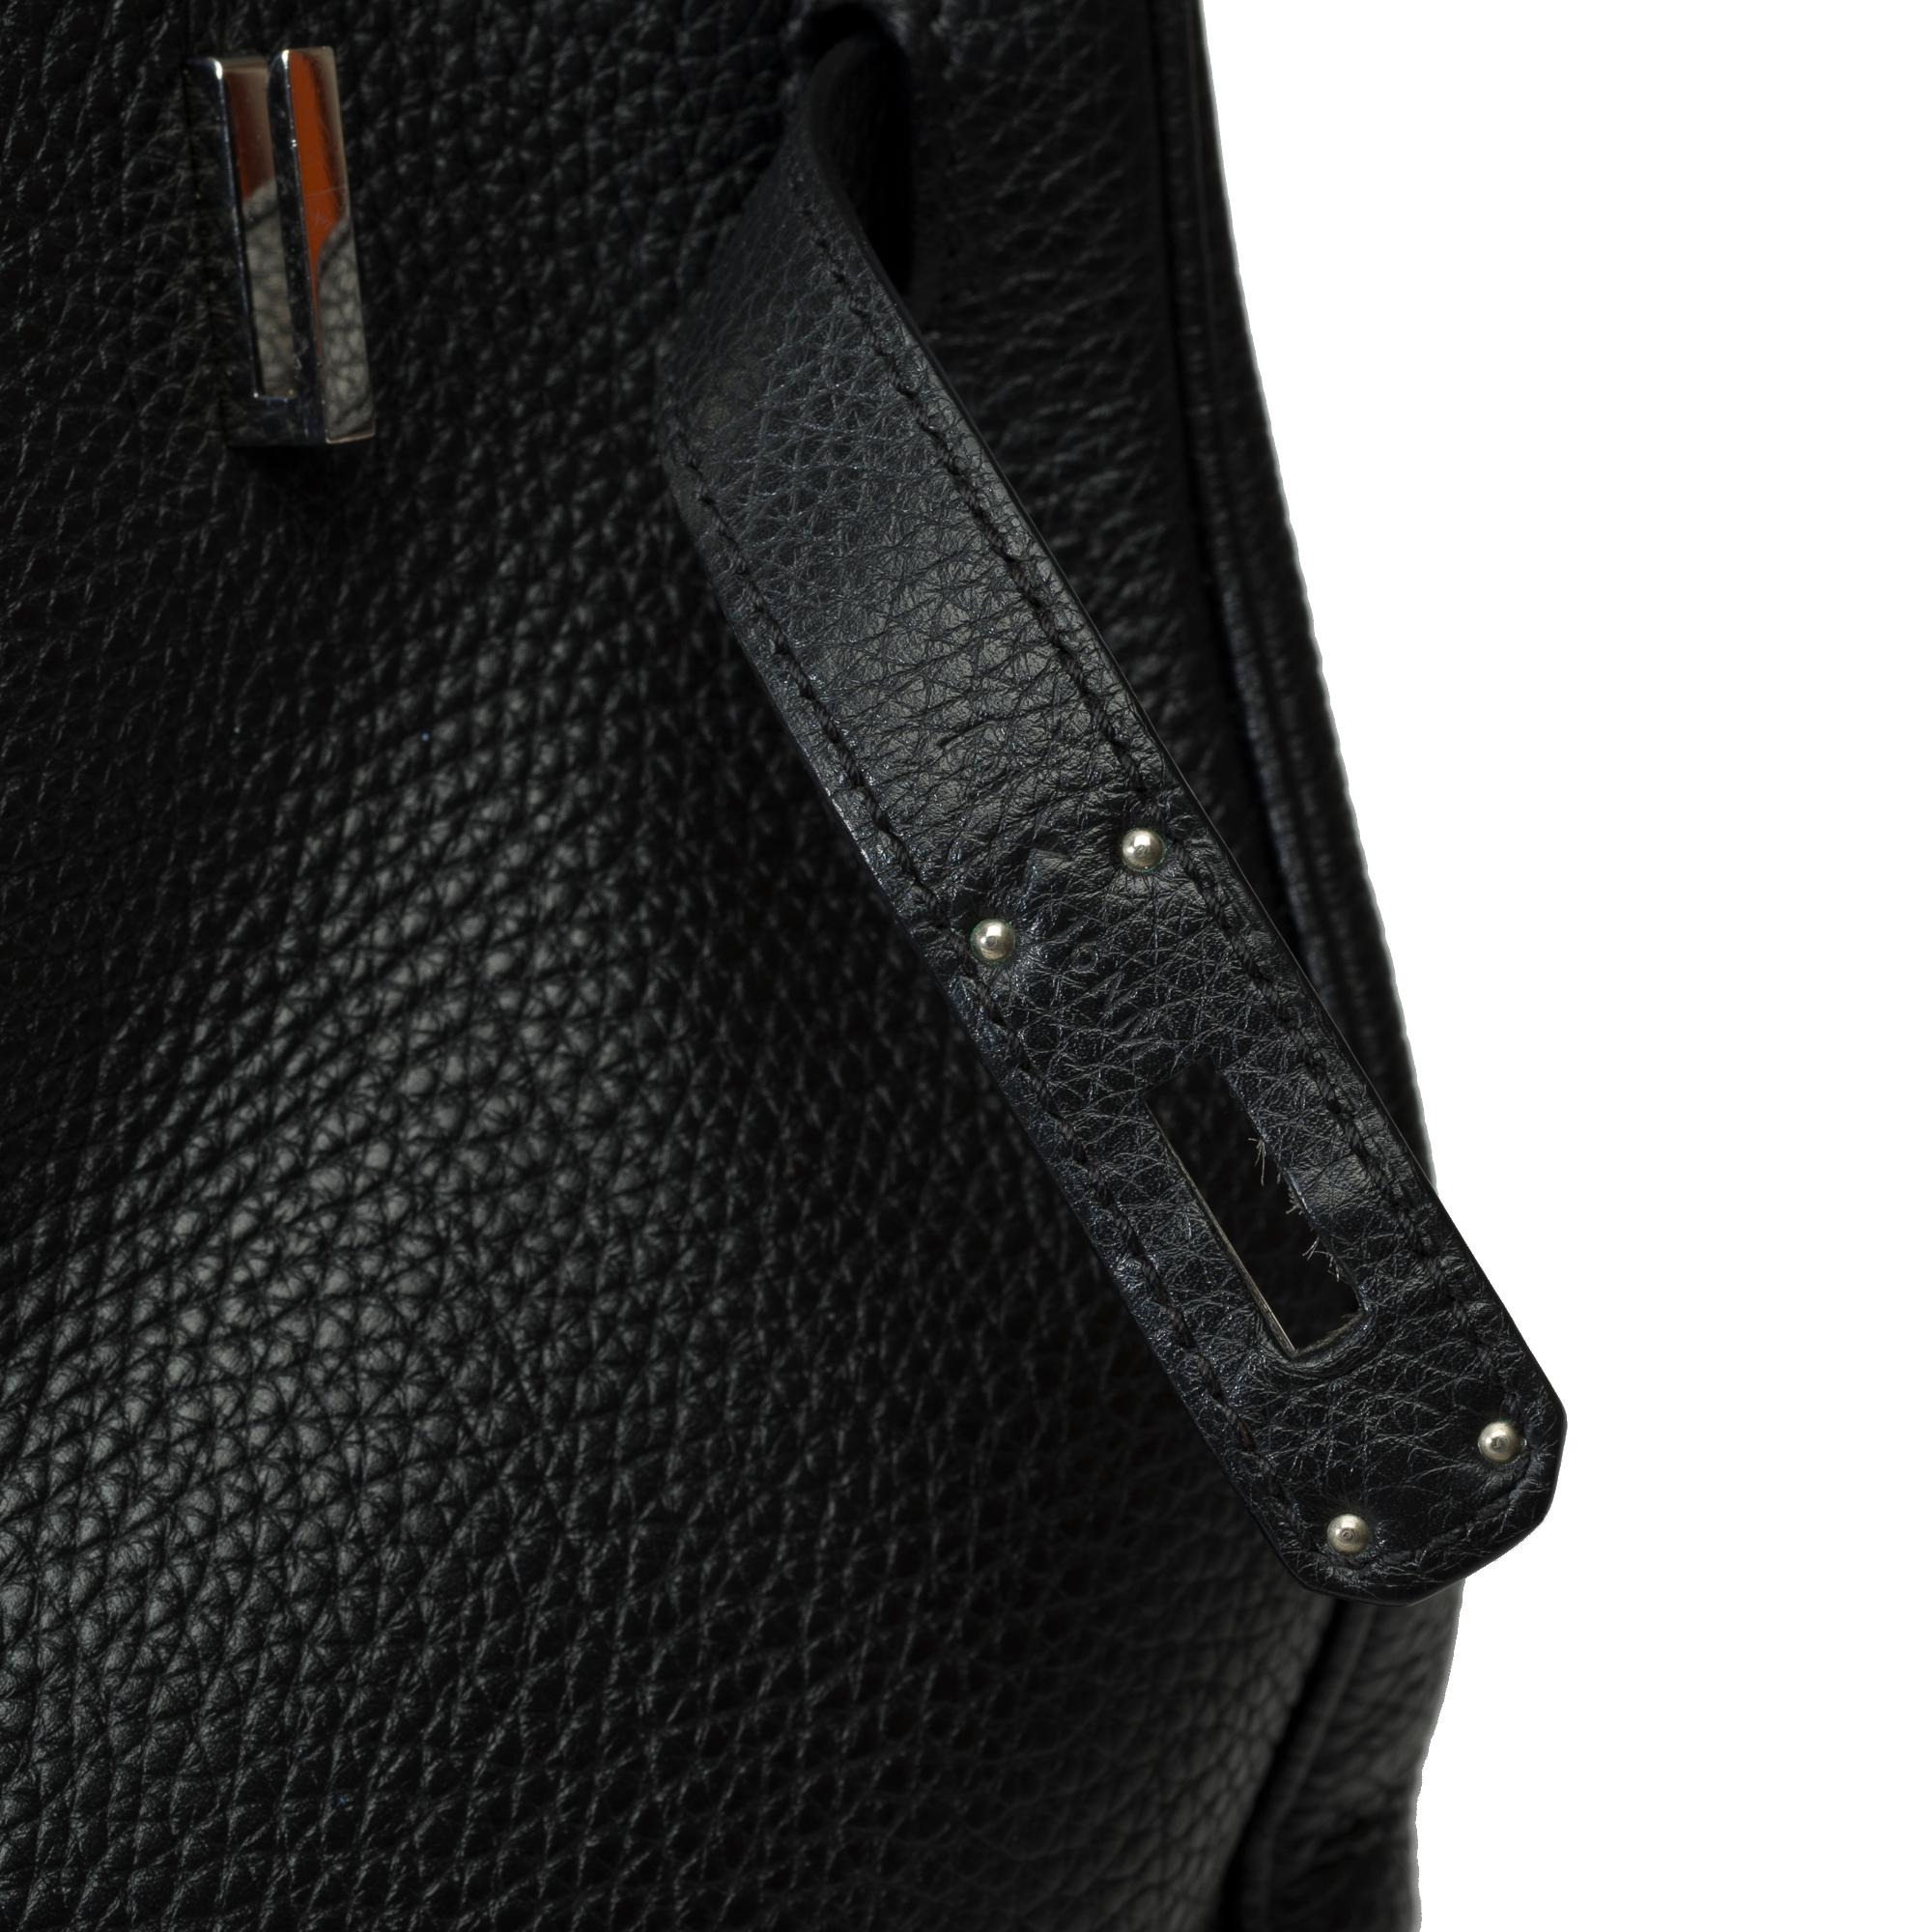 Stunning Hermes Birkin 30 handbag in Black Togo leather, SHW For Sale 4